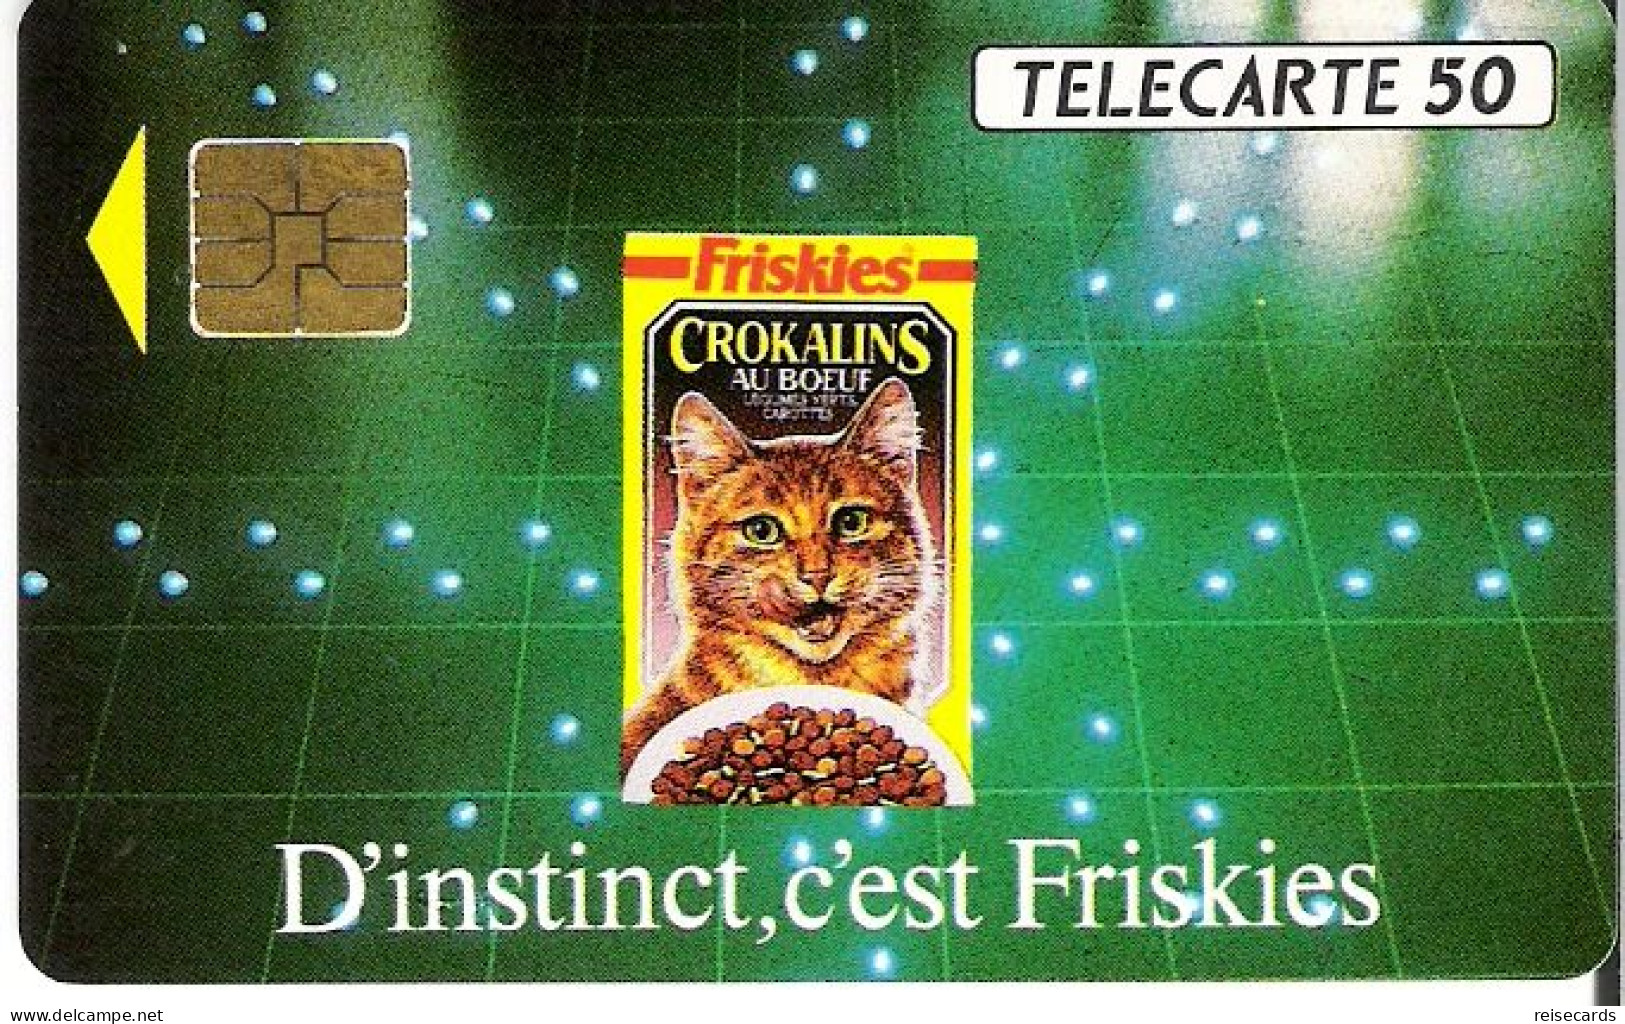 France: France Telecom 11/91 En216 Friskies. Mint - 1991